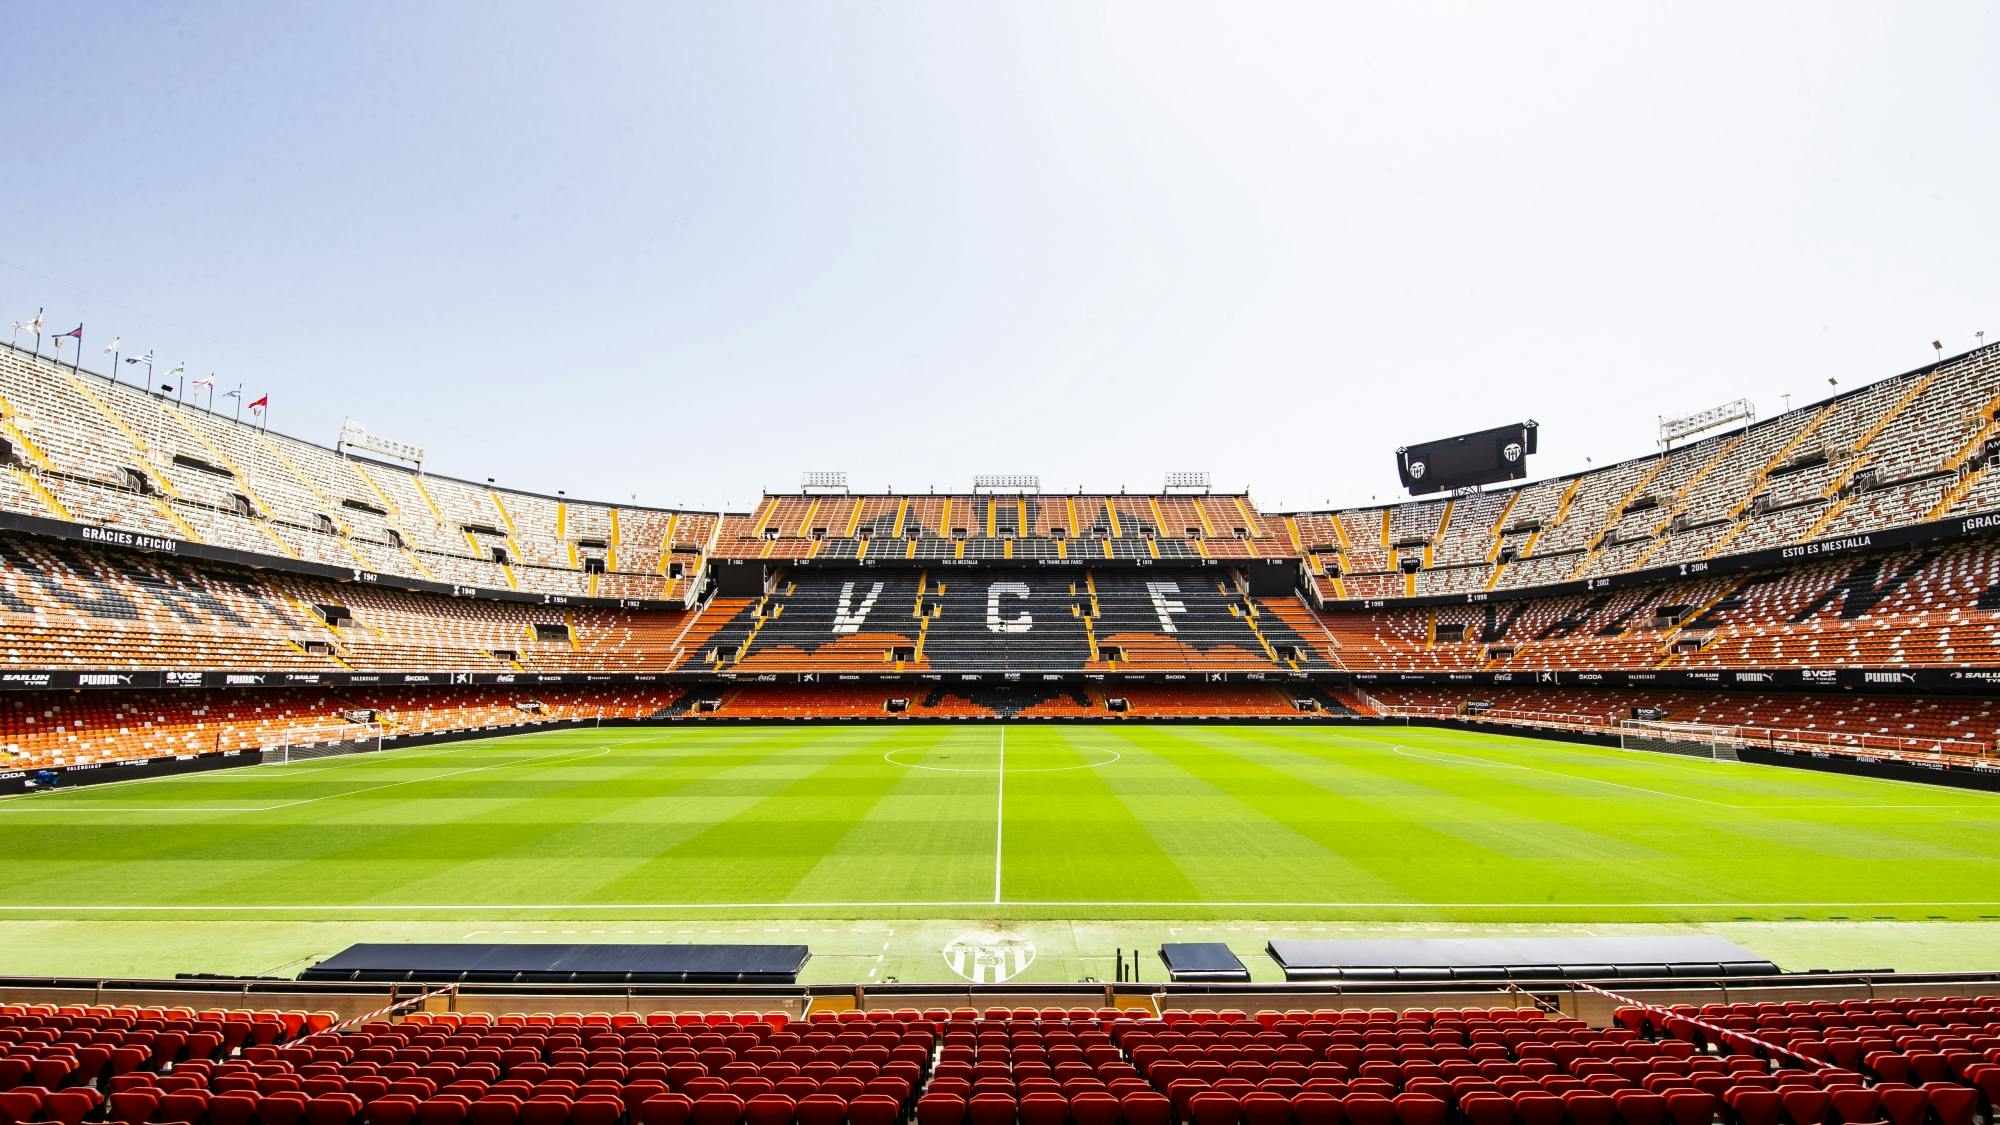 Mestalla Stadium Guided Visit